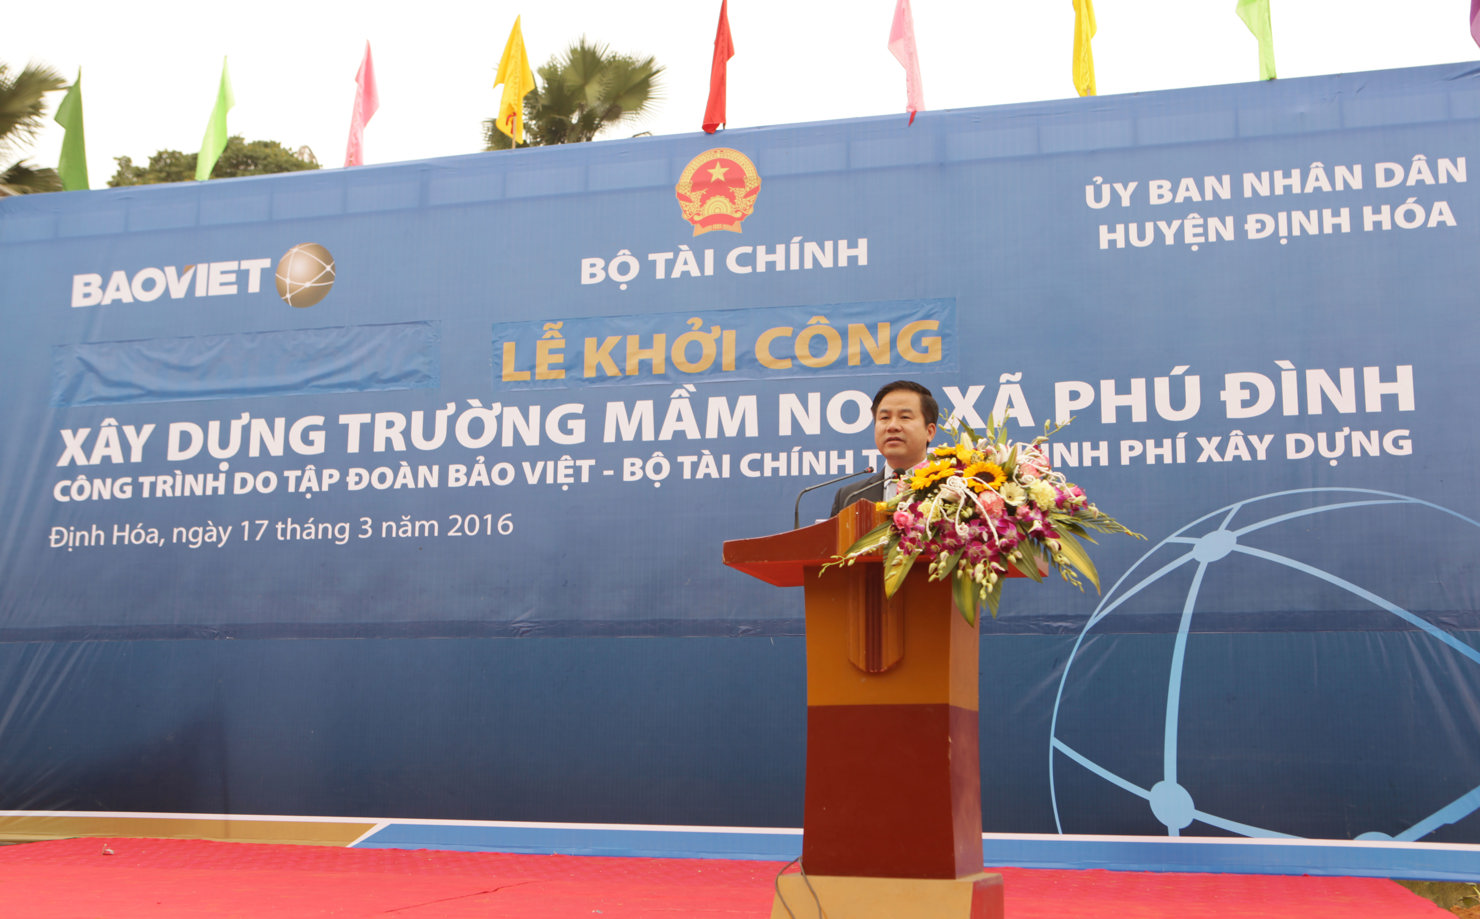  Tính đến nay, Quỹ An sinh xã hội Tập đoàn Bảo Việt đã đầu tư gần 150 tỷ đồng cho các hoạt động vì cộng đồng.